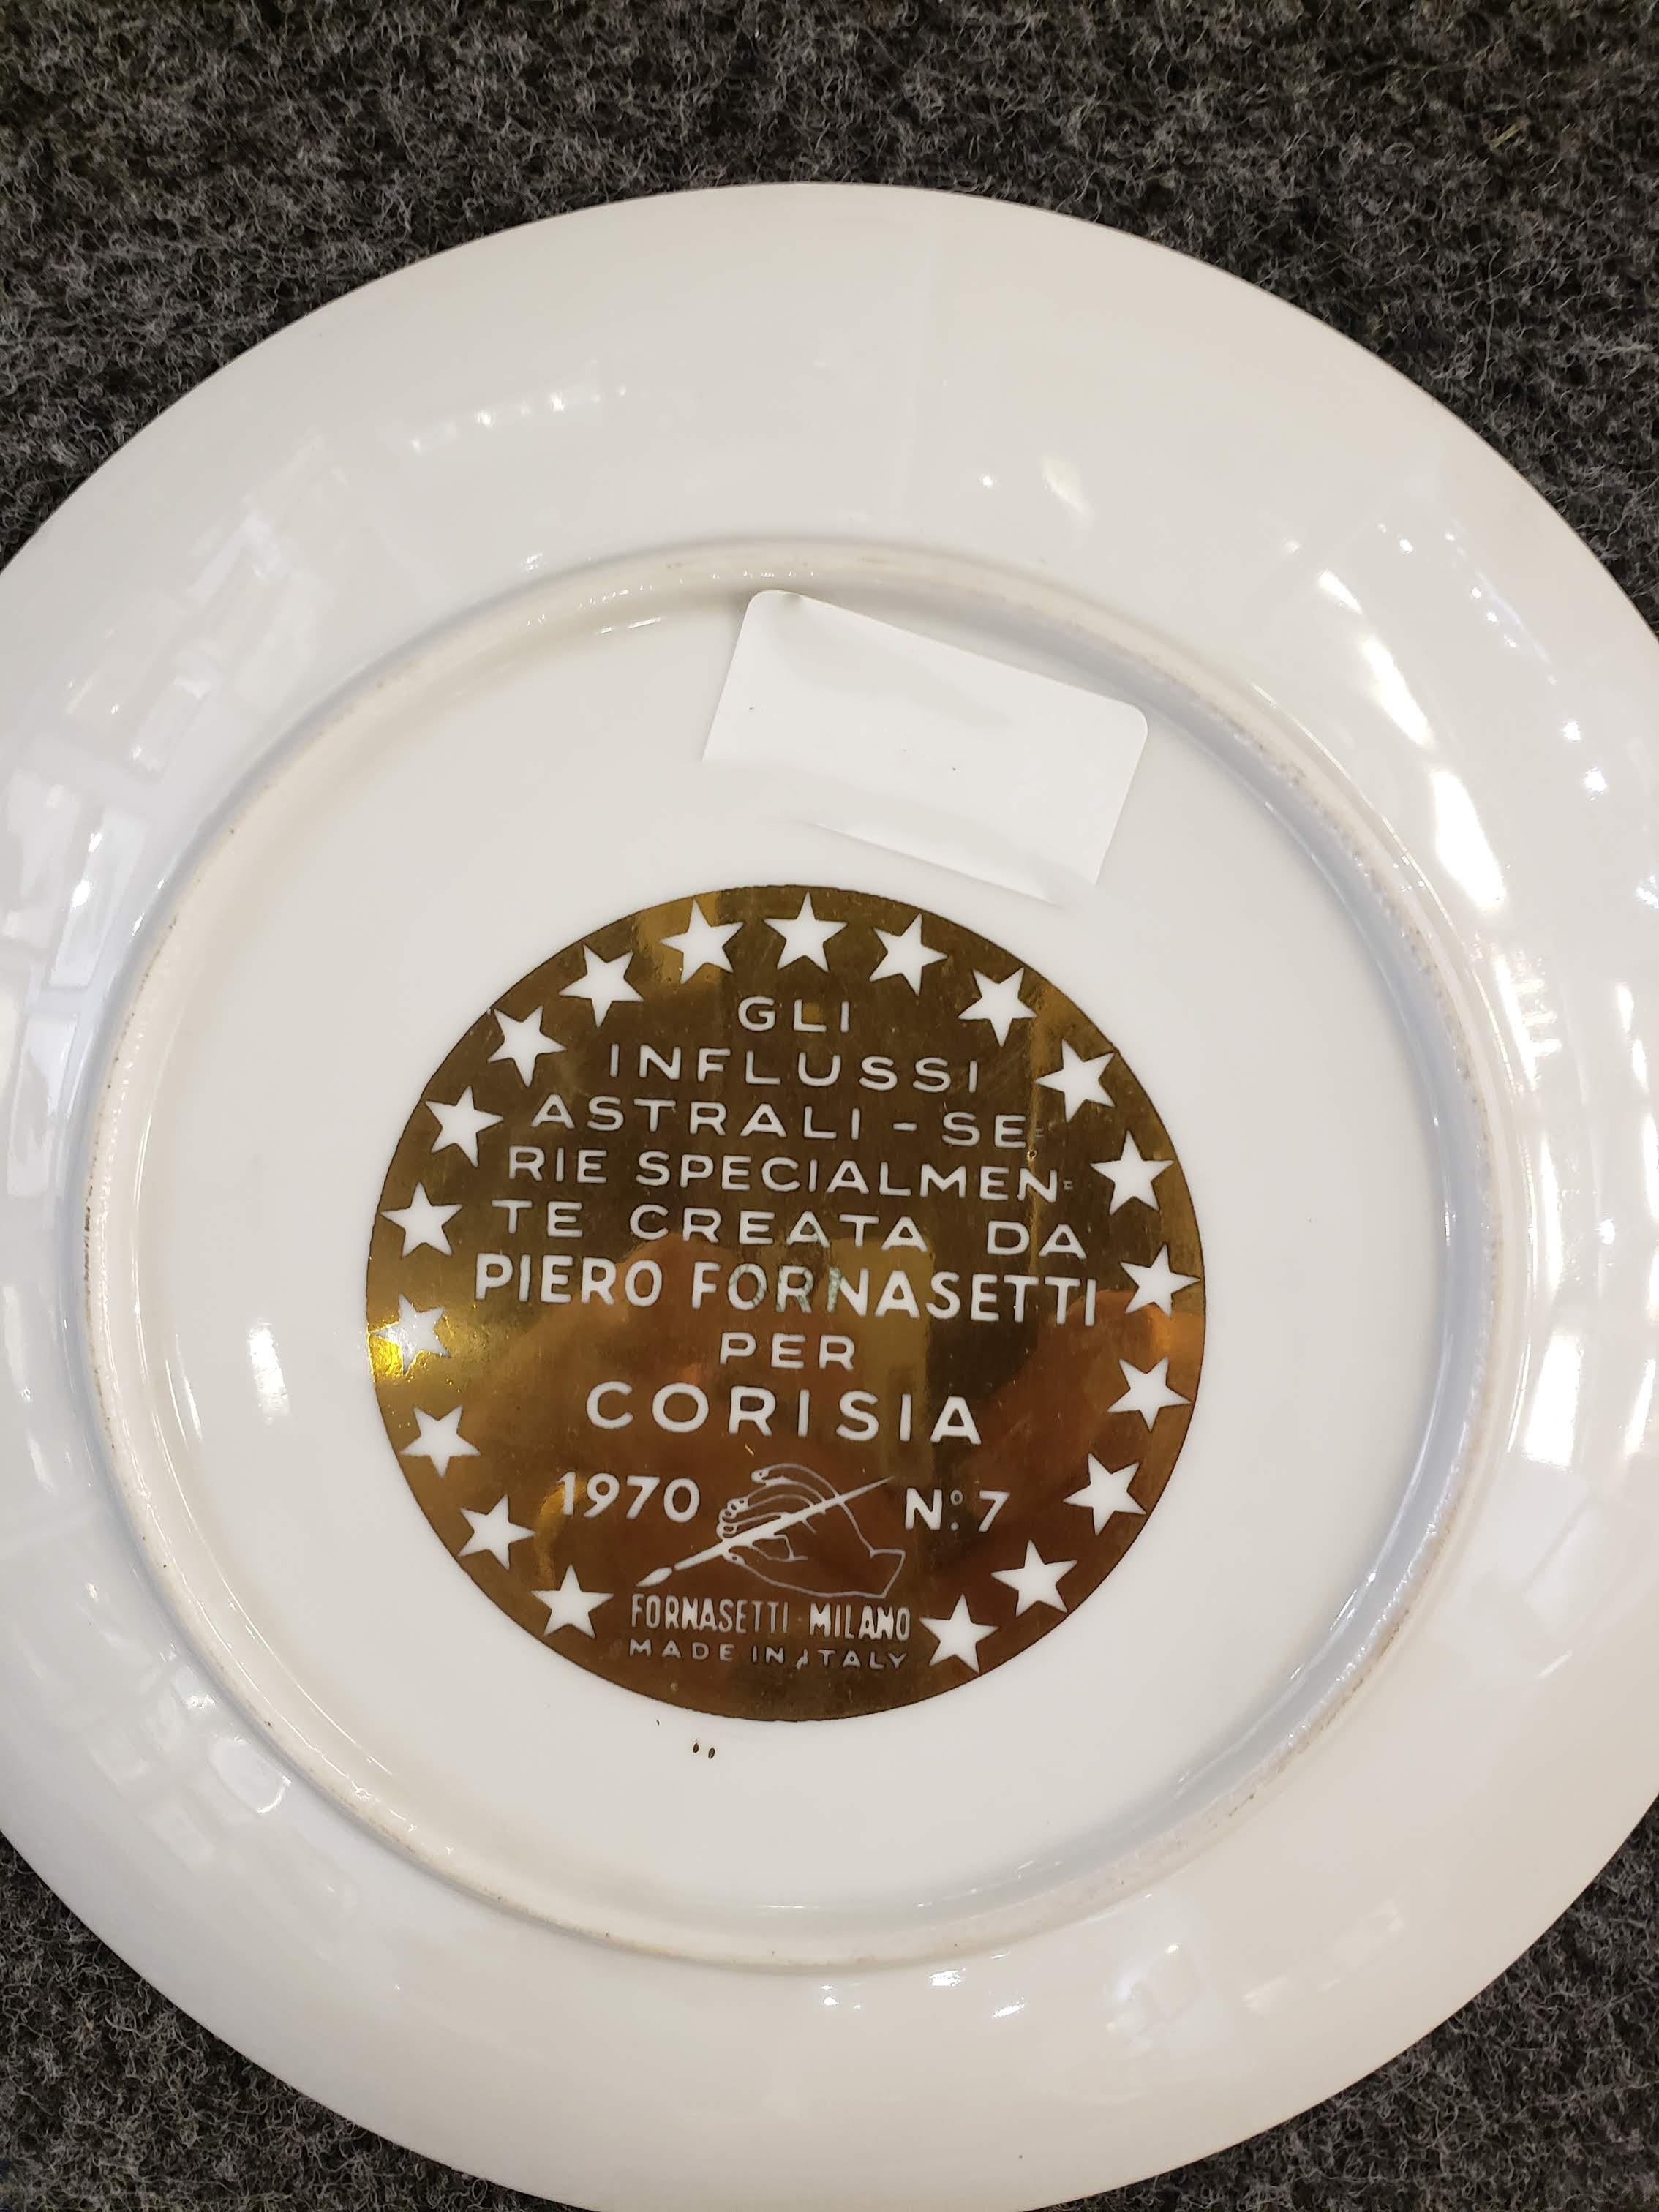 Italian Piero Fornasetti Libra Zodiac Porcelain Plate Made for Corisia in 1970